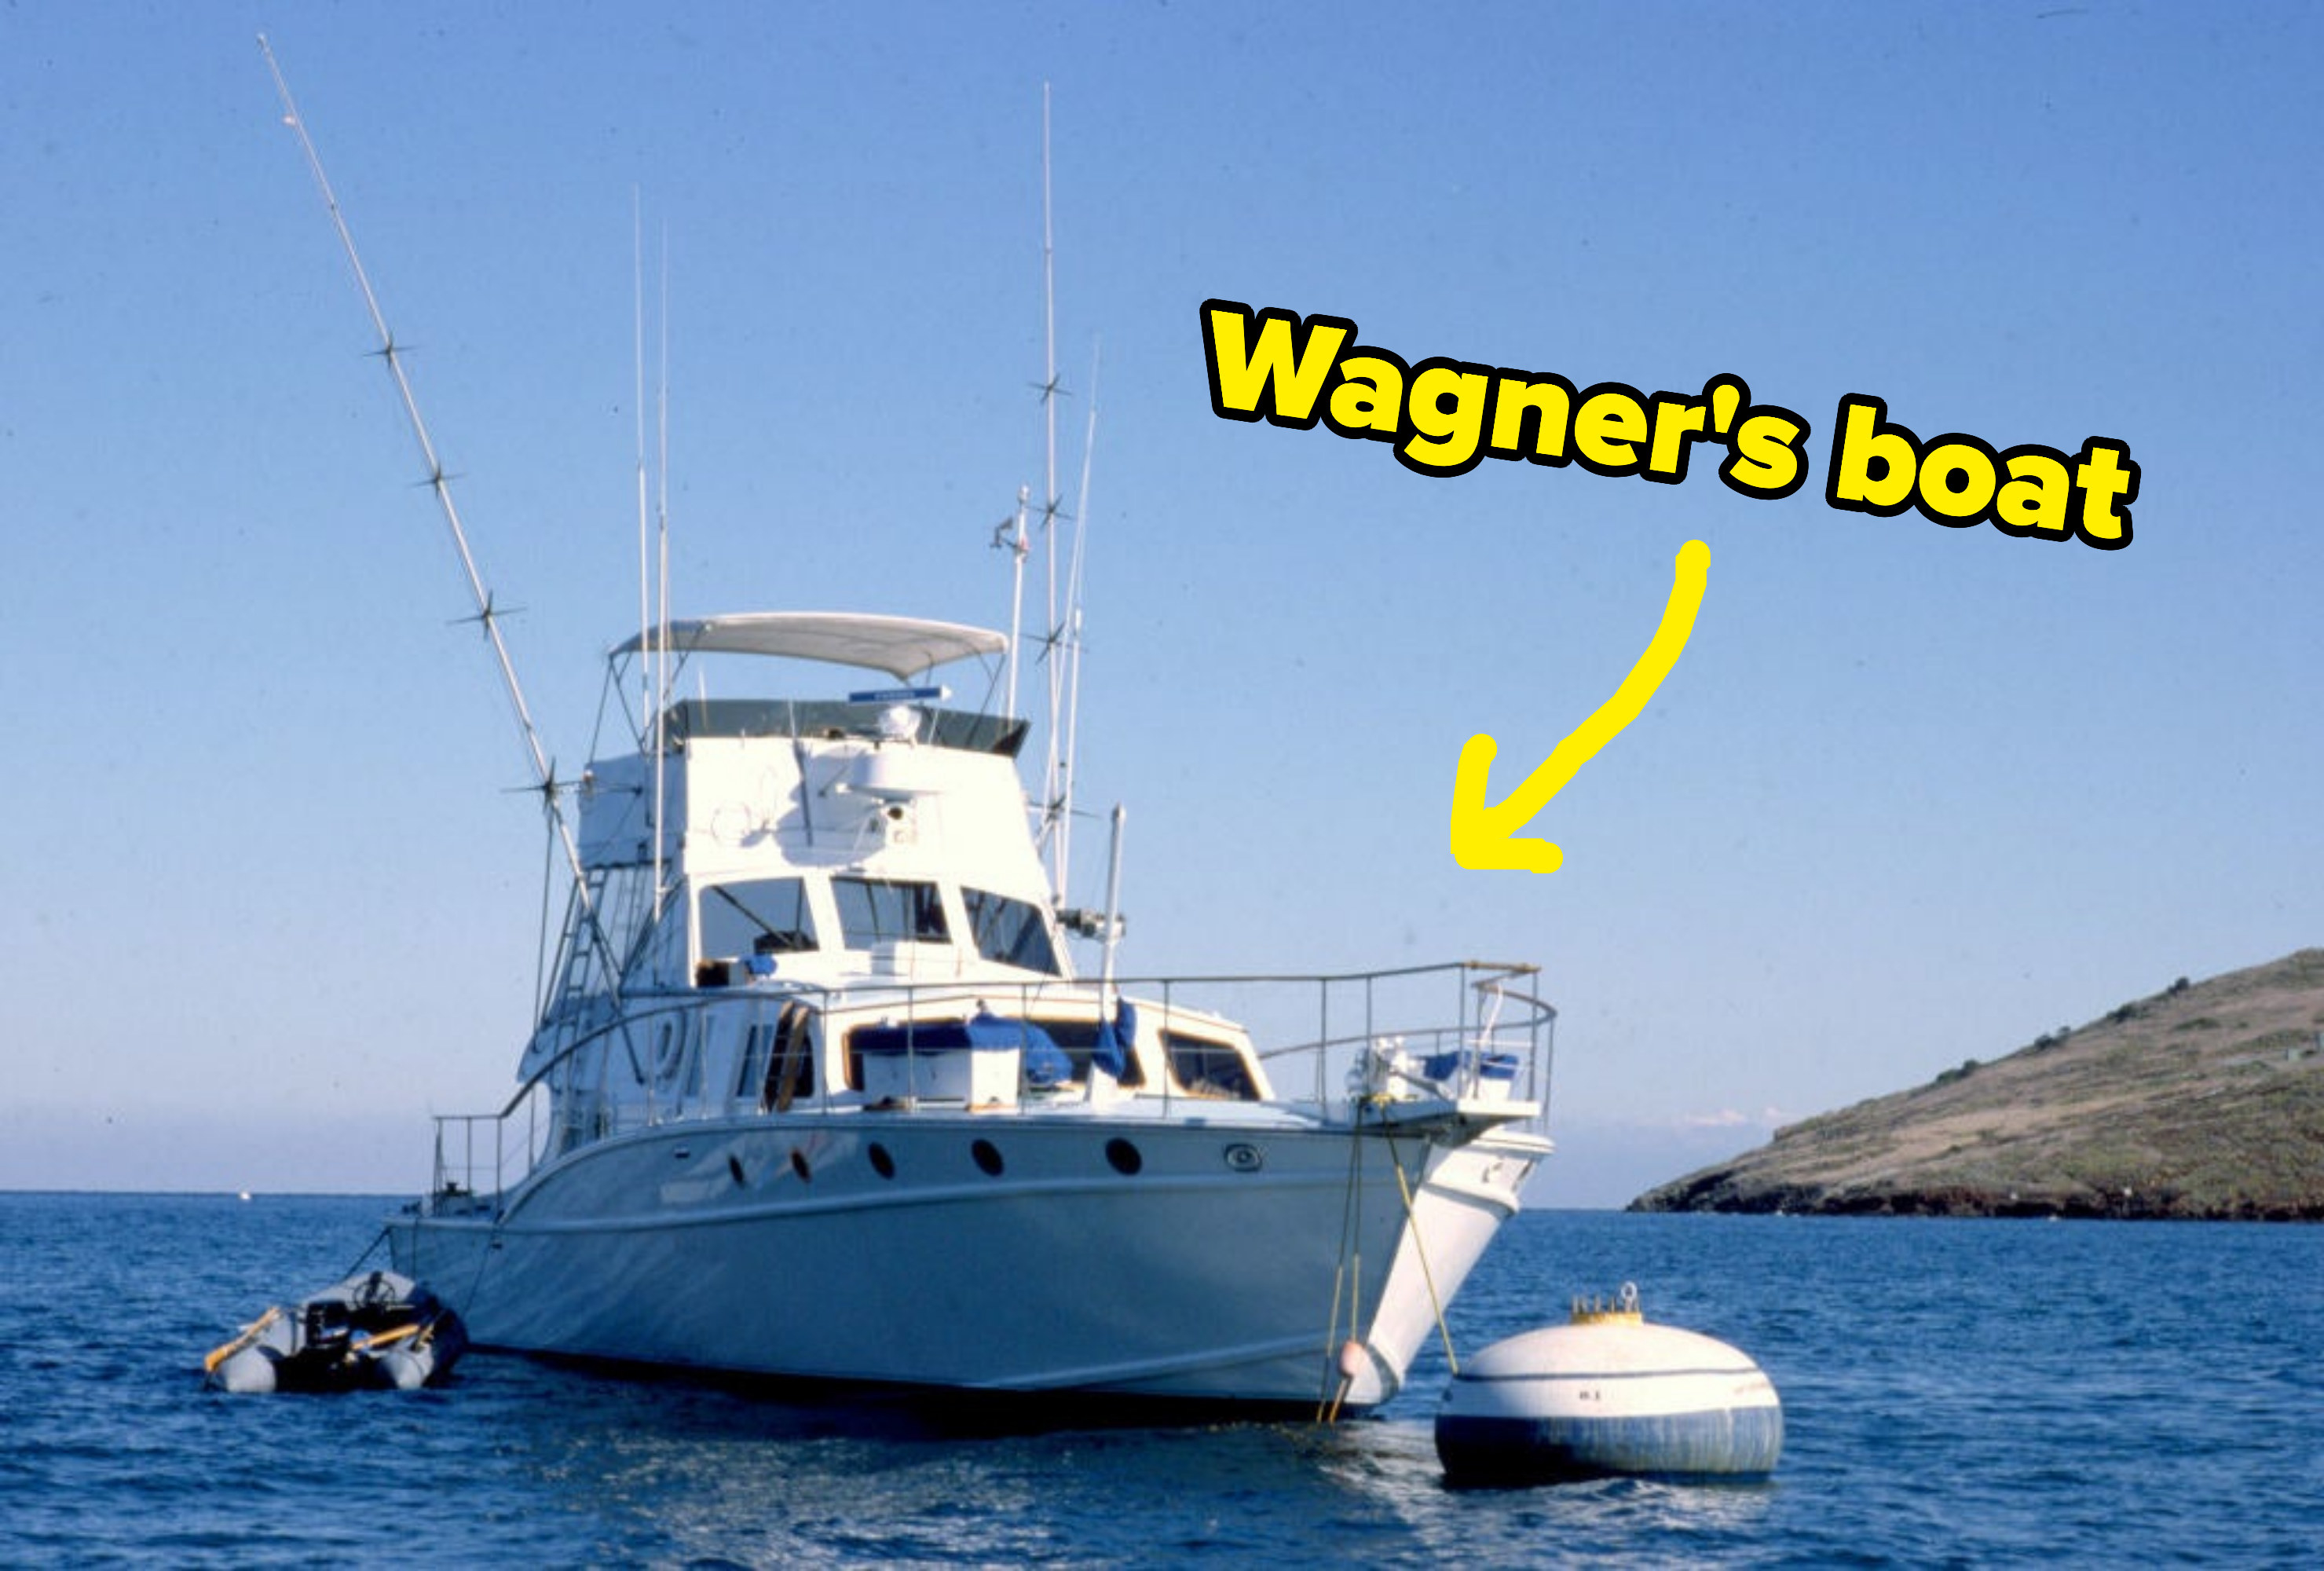 罗伯特·瓦格纳# x27游艇